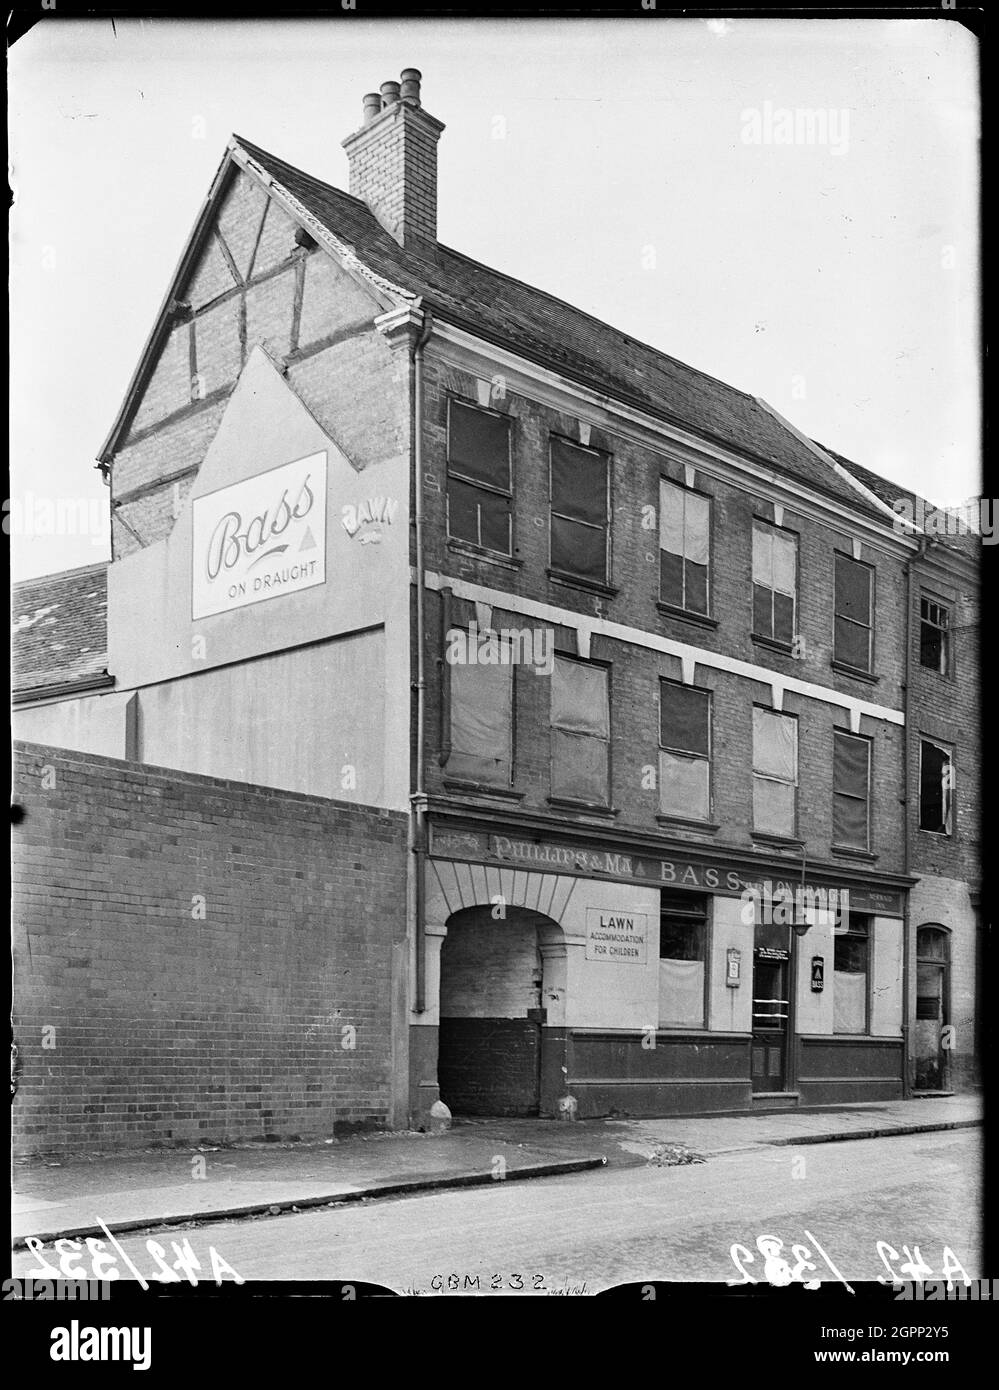 Mermaid Inn, Gosford Street, Coventry, 1941. Das Mermaid Inn in der Gosford Street 109. Die Fenster des öffentlichen Hauses sind an Bord, wahrscheinlich aufgrund von Bombenschäden. Das Stadtzentrum von Coventry wurde am 14. November 1940 durch Luftangriffe verwüstet. Die Bombenangriffe ließen die nahe gelegene Kathedrale in Ruinen zurück und zerstörten einen Großteil des historischen Gewebes der Stadt. Stockfoto